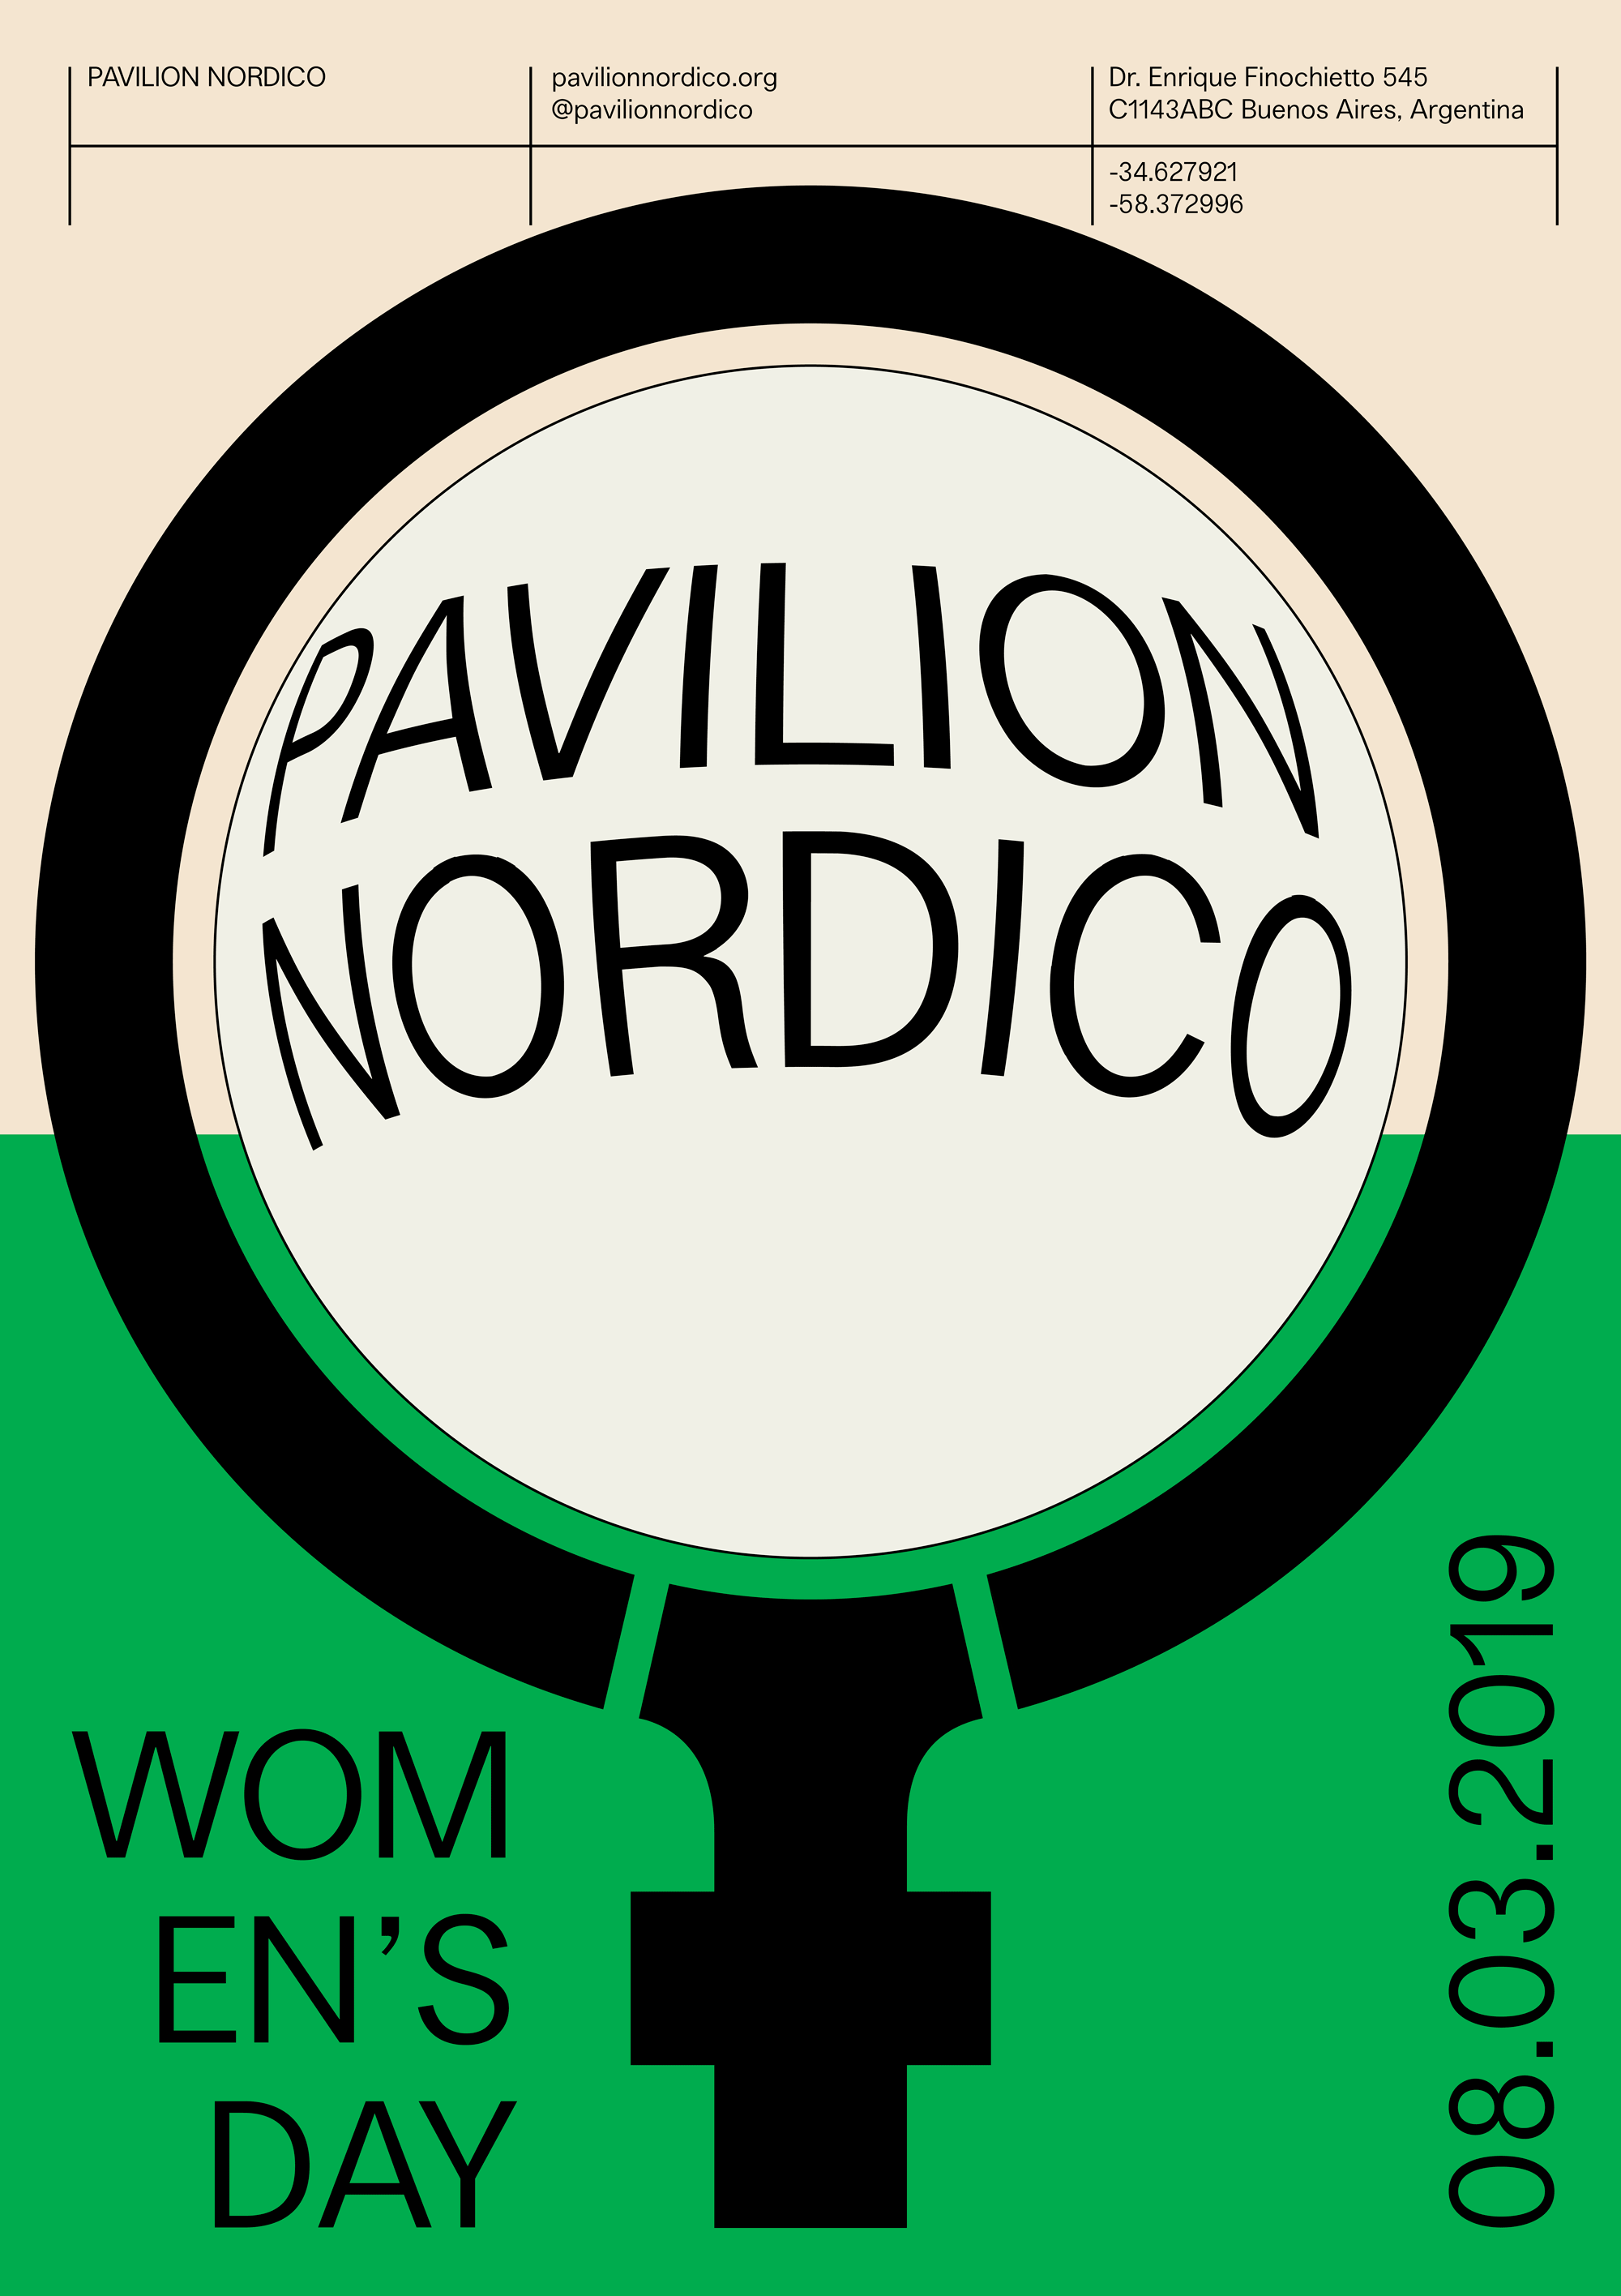 Pavilion Nordico